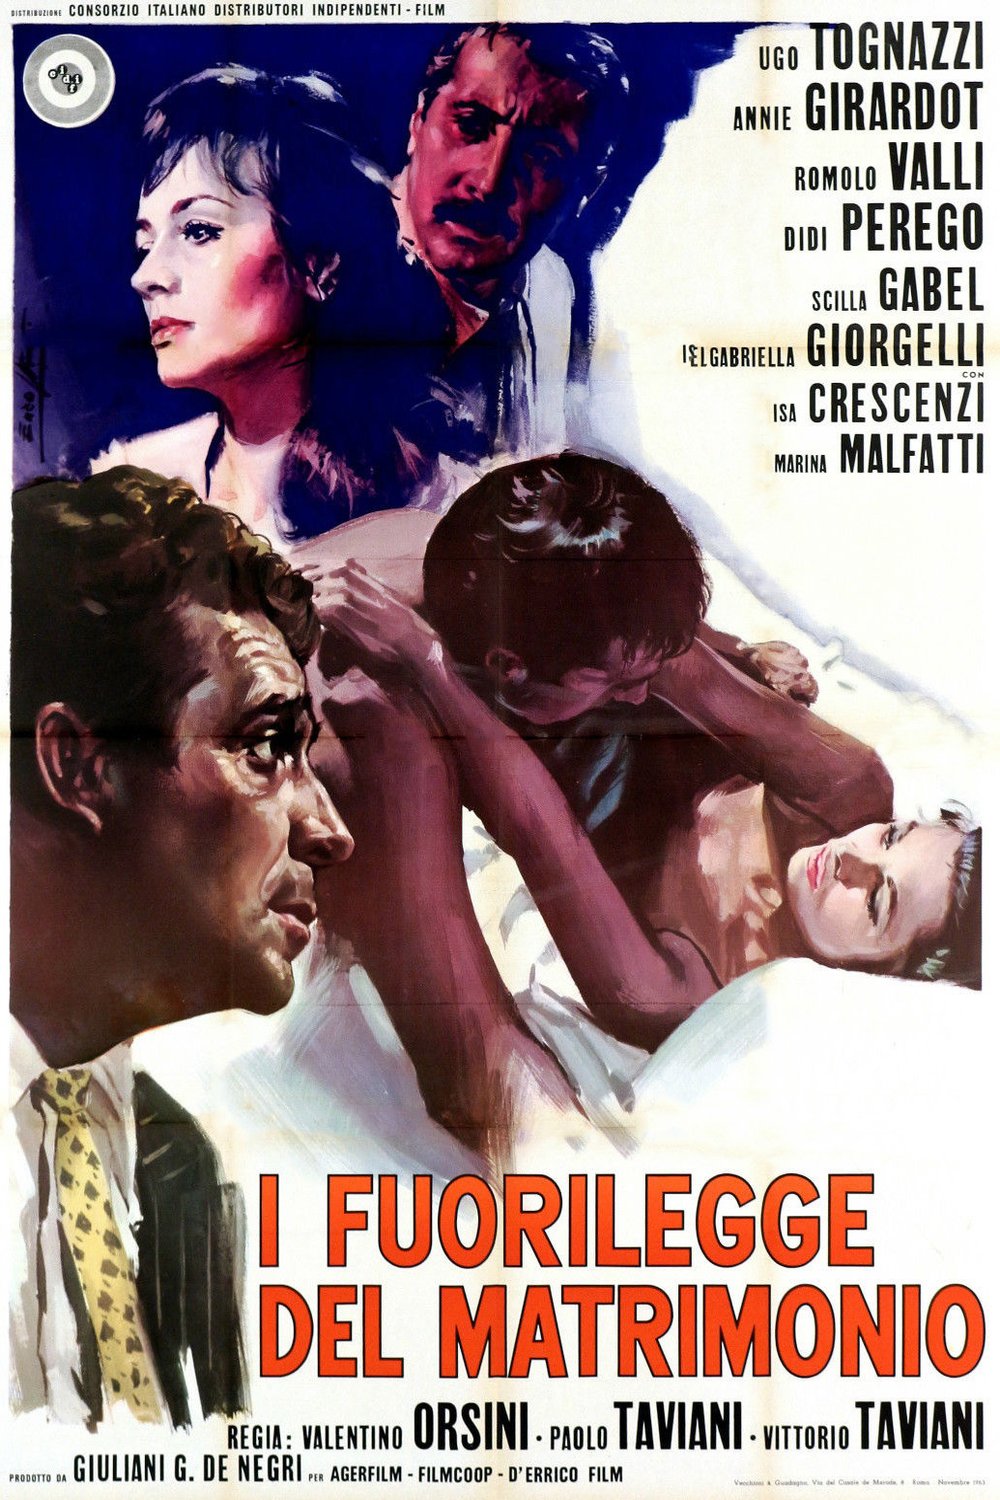 Italian poster of the movie I fuorilegge del matrimonio